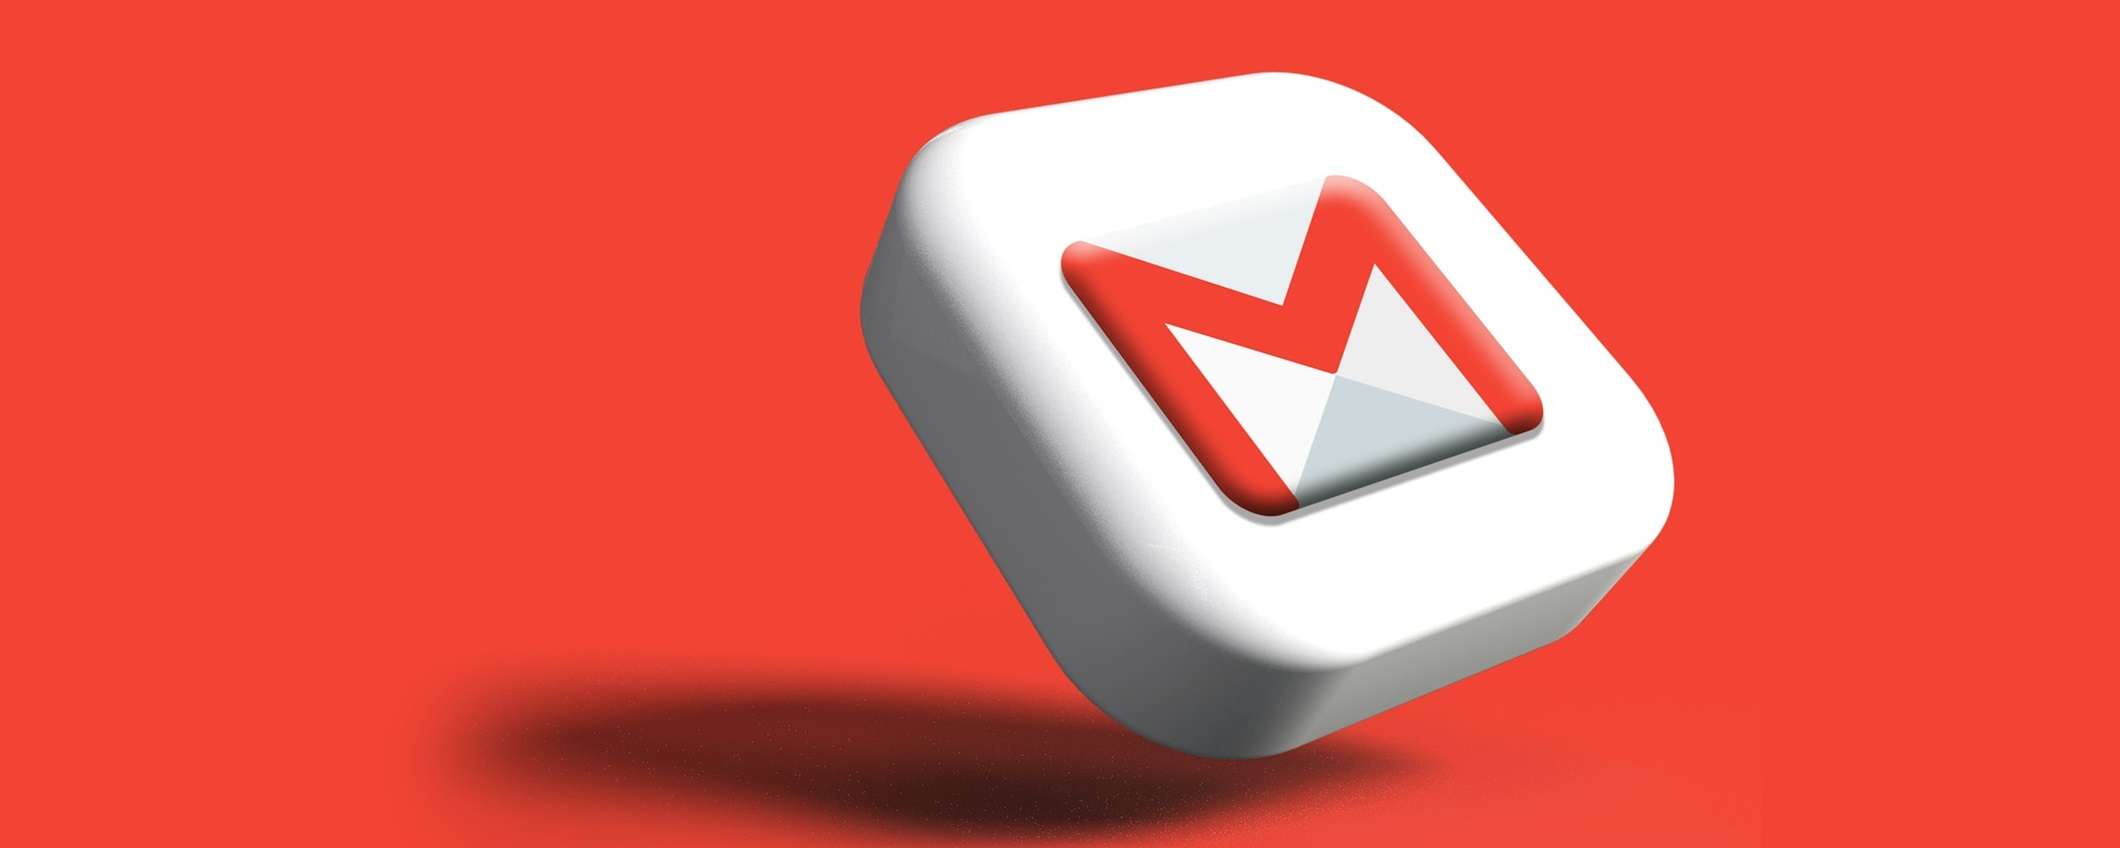 Come trovare ed eliminare la posta indesiderata su Gmail